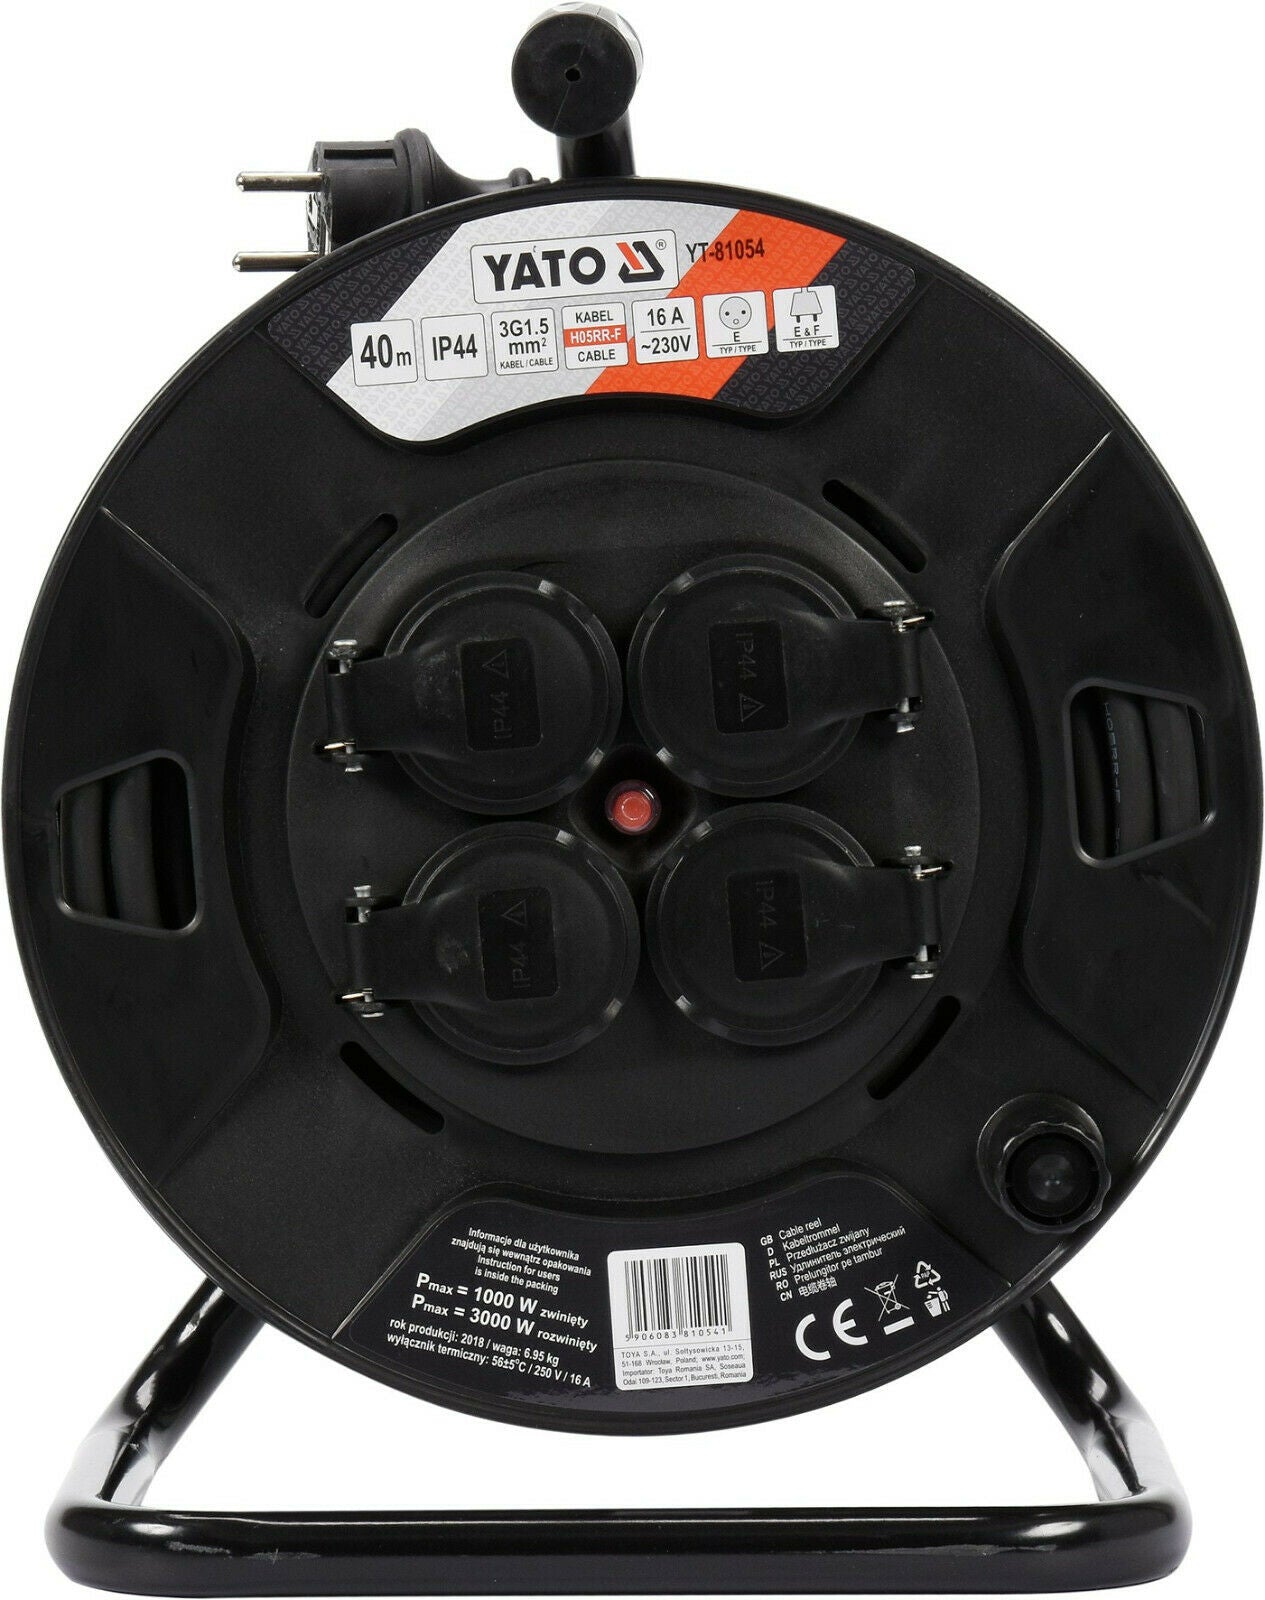 Yato YT-81054 Kabeltrommel 40m 4 Buchsen 16A 1,5mm² innen/außen Typ E&F IP44 - Flex-Autoteile